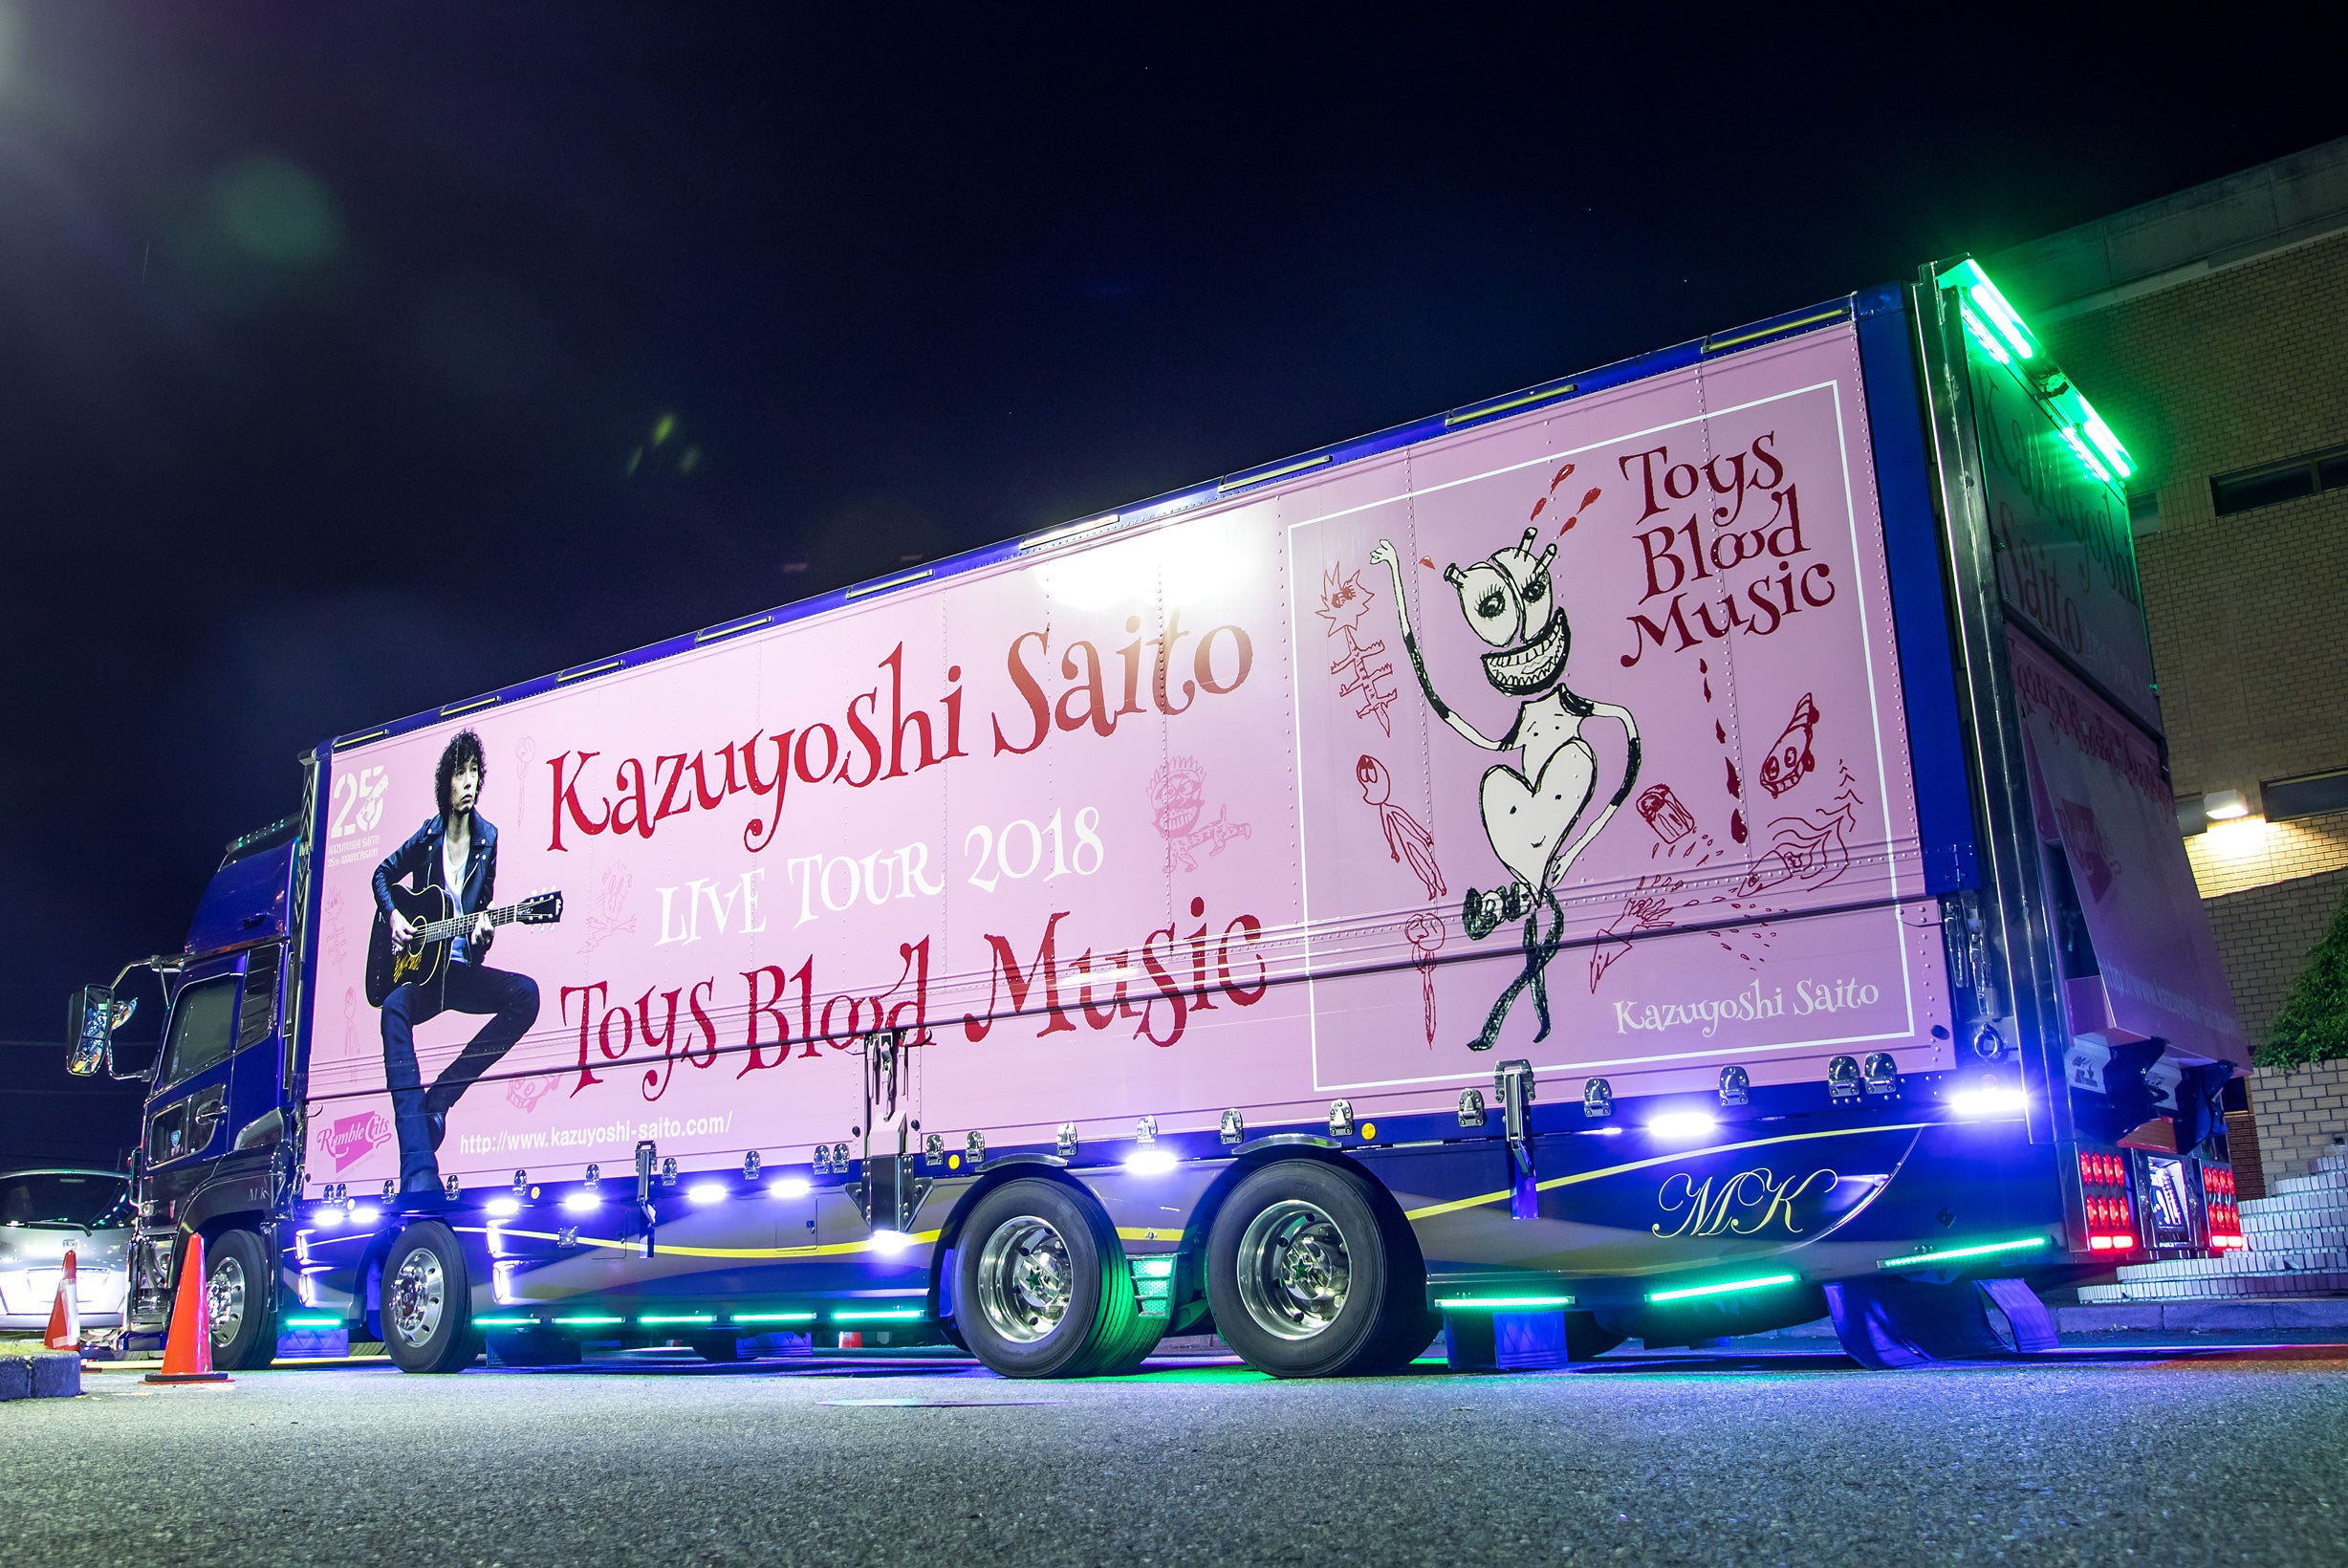 エンタメ その他Kazuyoshi Saito LIVE TOUR 2018 Toys Blood Music Live at 山梨コラニー文化ホール2018.06.02 [Blu-ray] mxn26g8